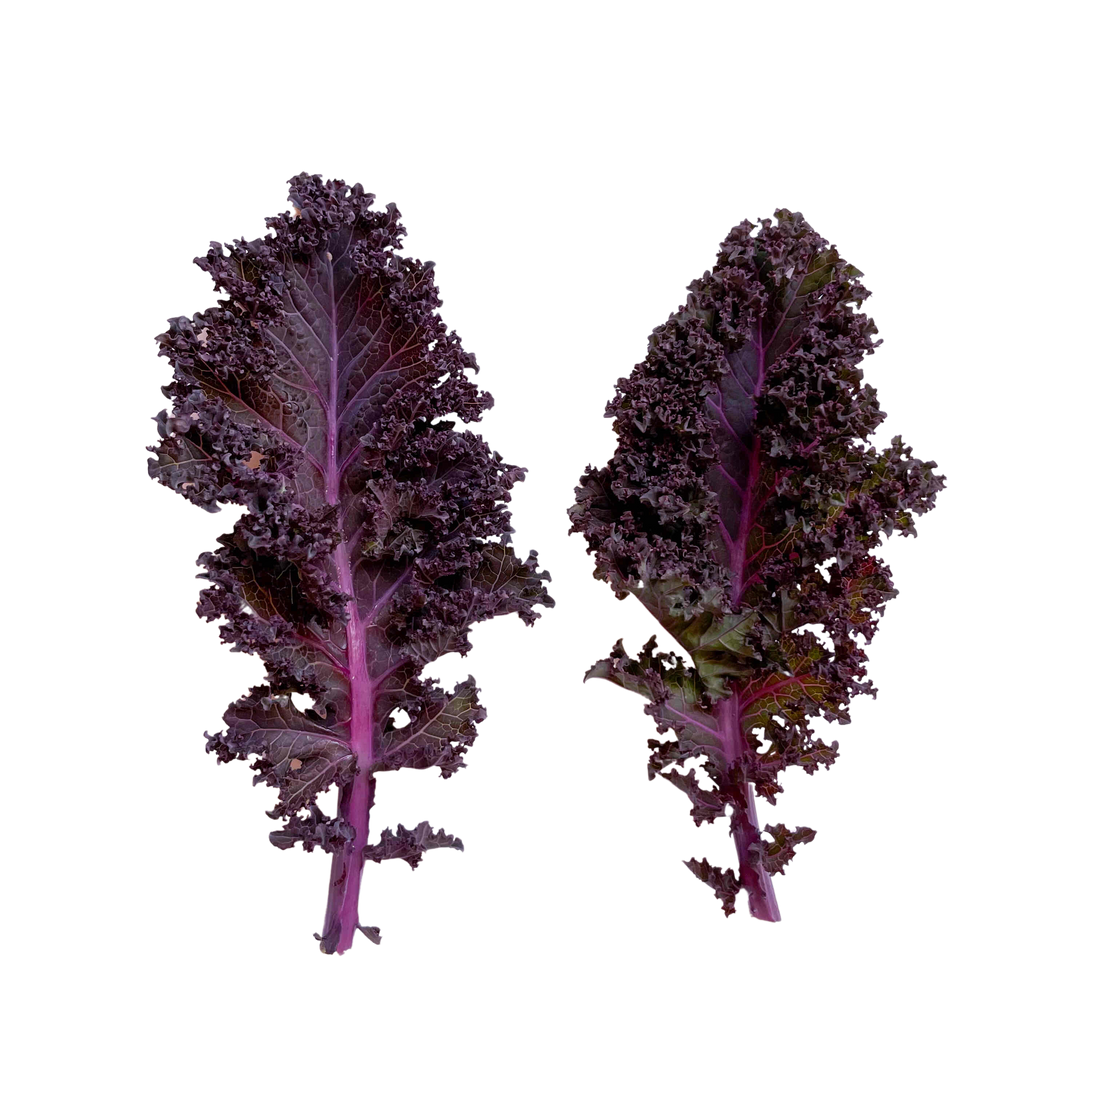 Mini Couve Kale Roxa